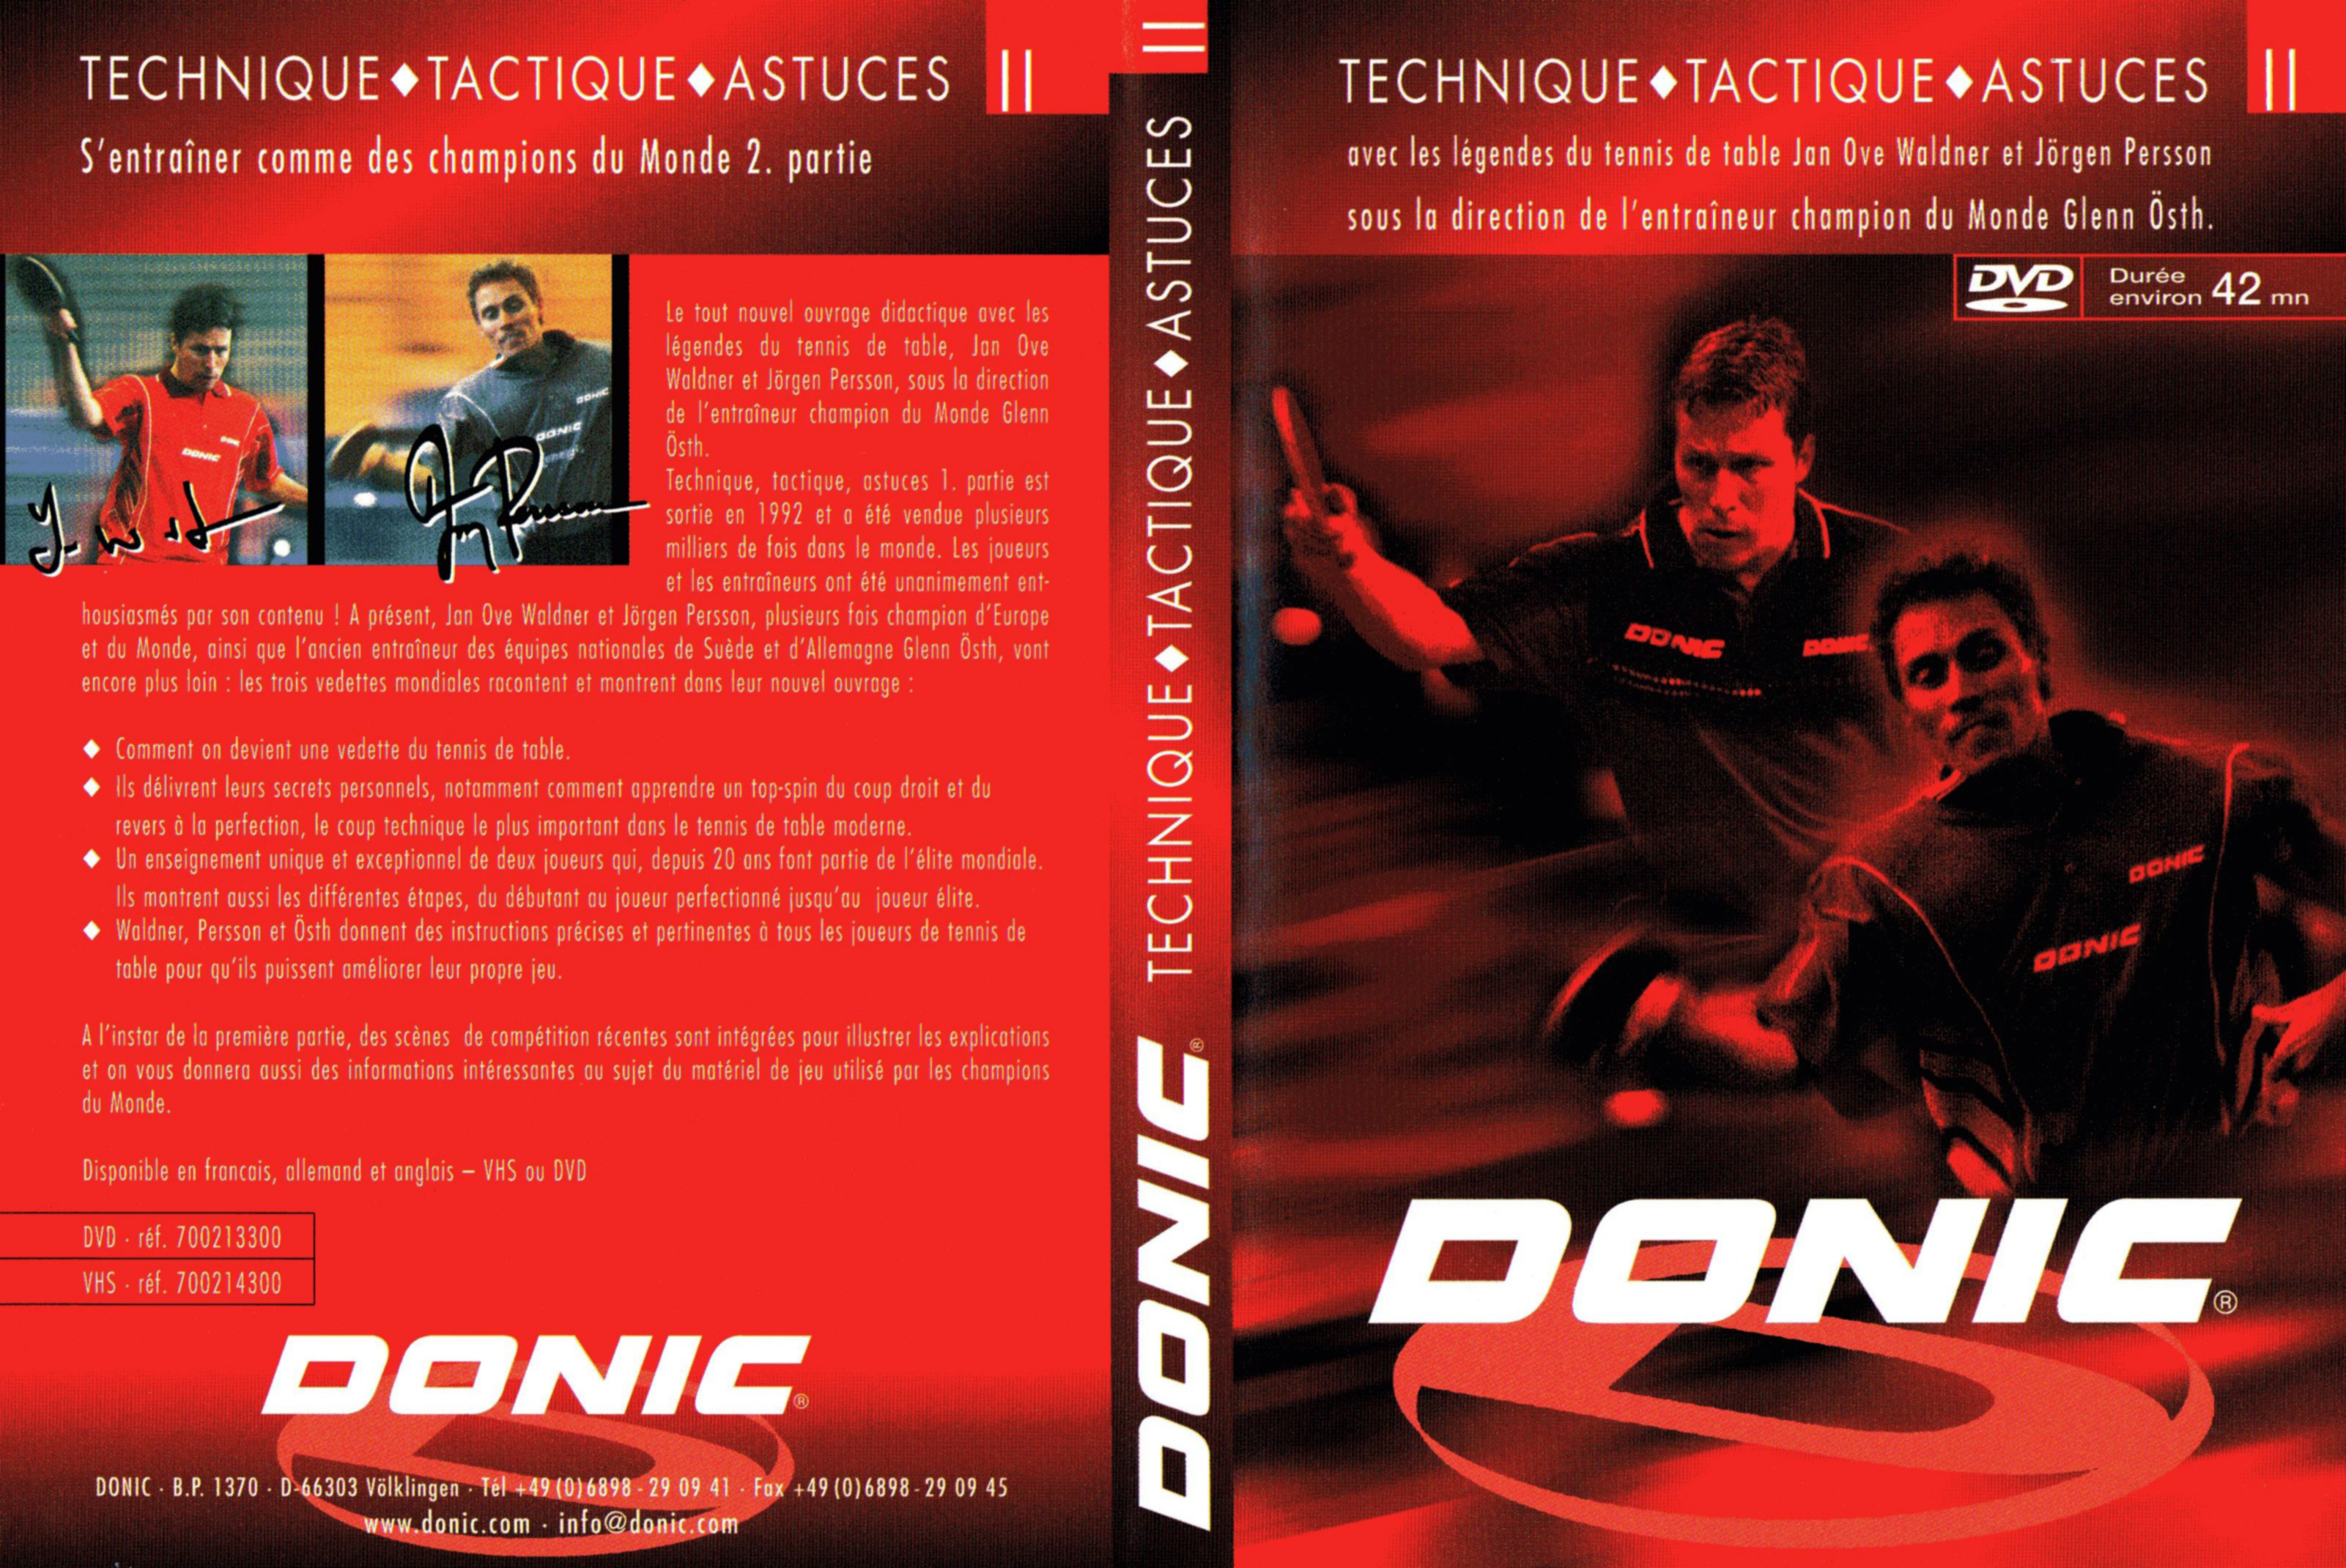 Jaquette DVD DONIC Technique Tactique Astuces